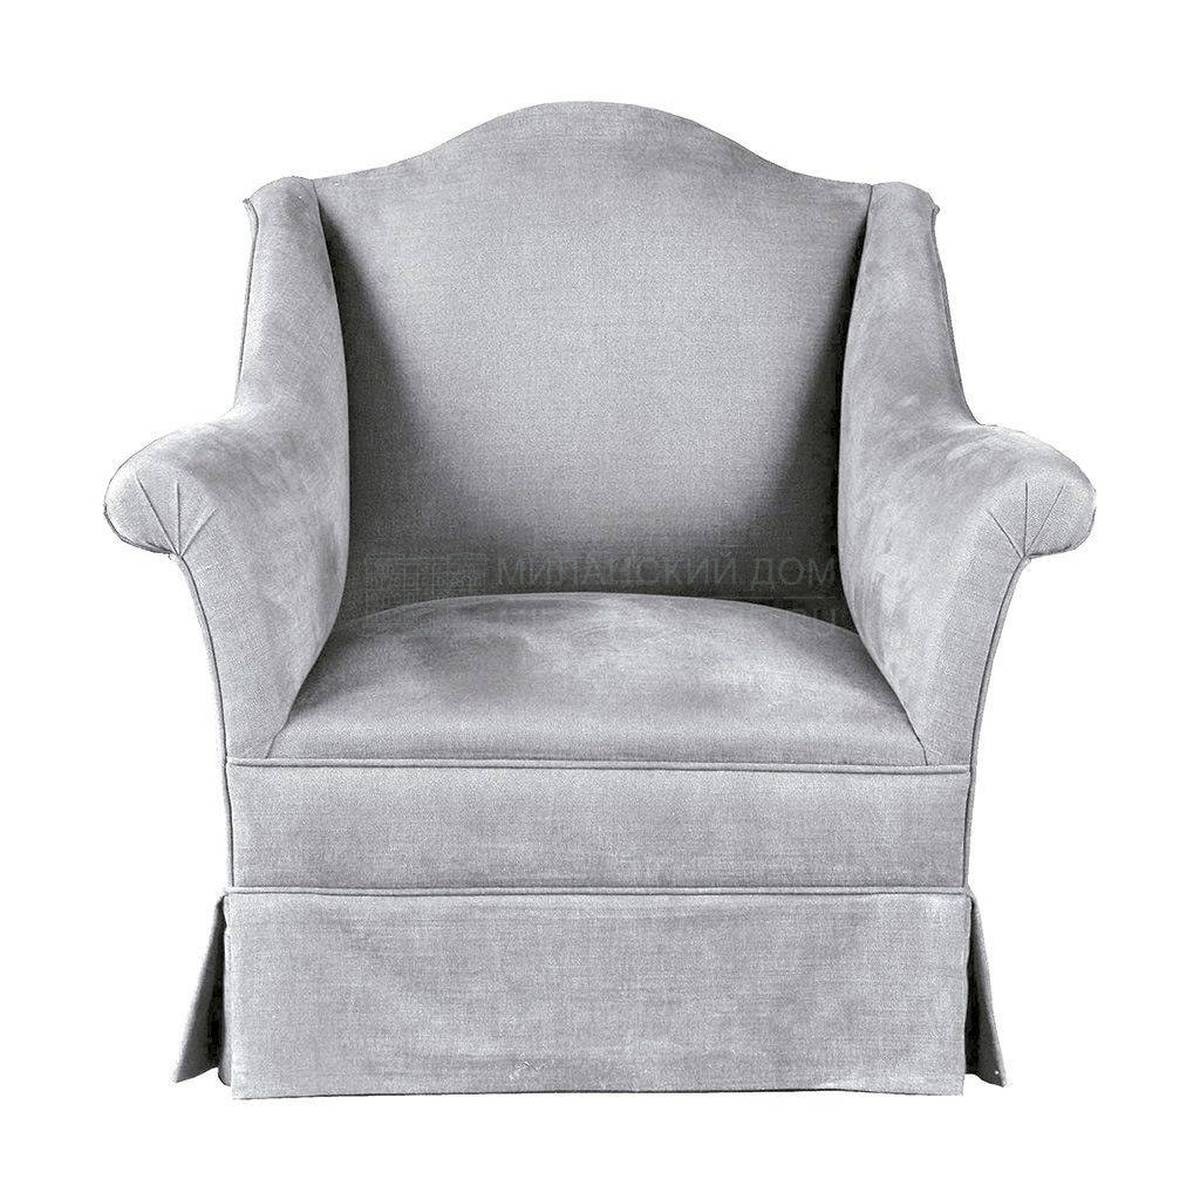 Кресло Z-8153 armchair из Испании фабрики GUADARTE